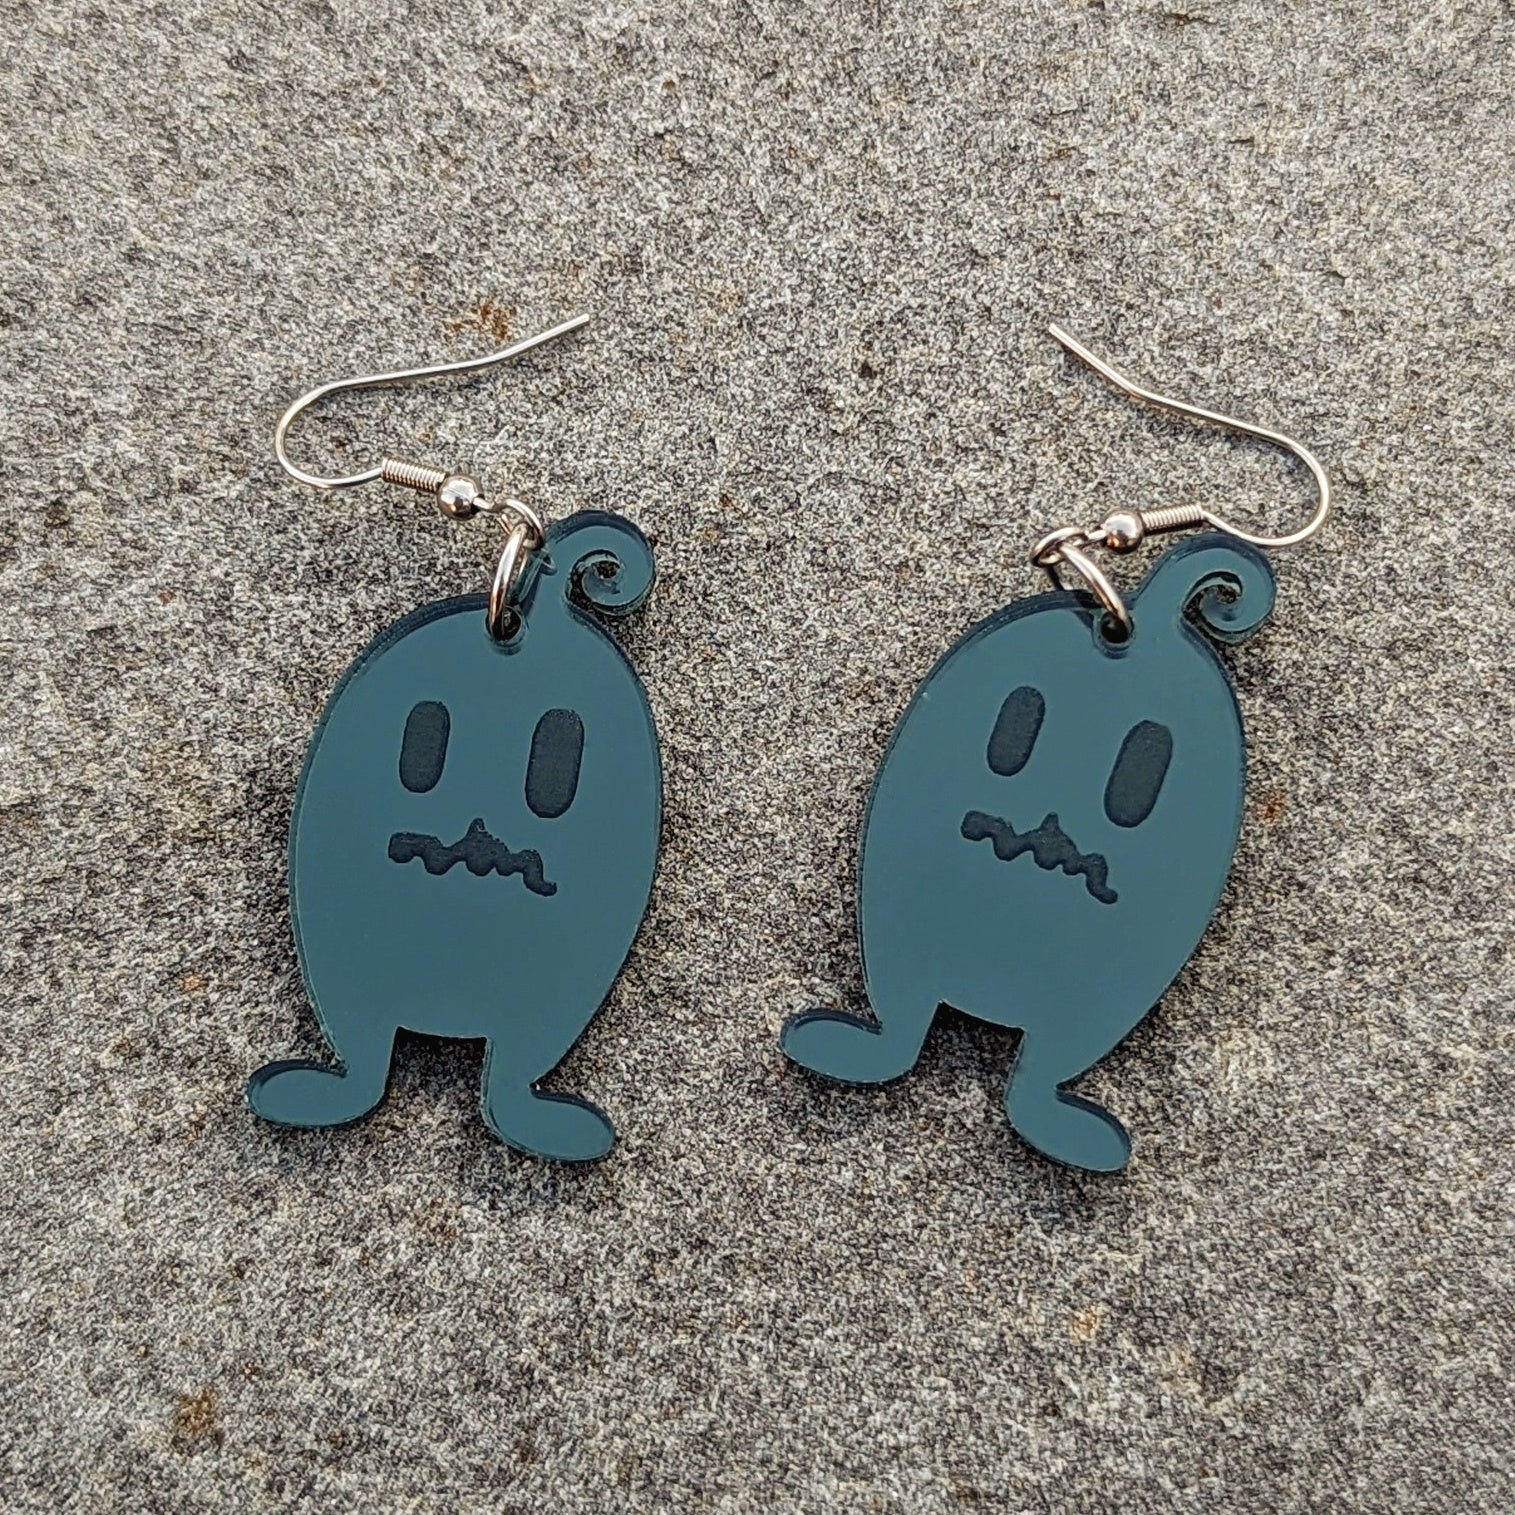 Dark grey shadow monster earrings